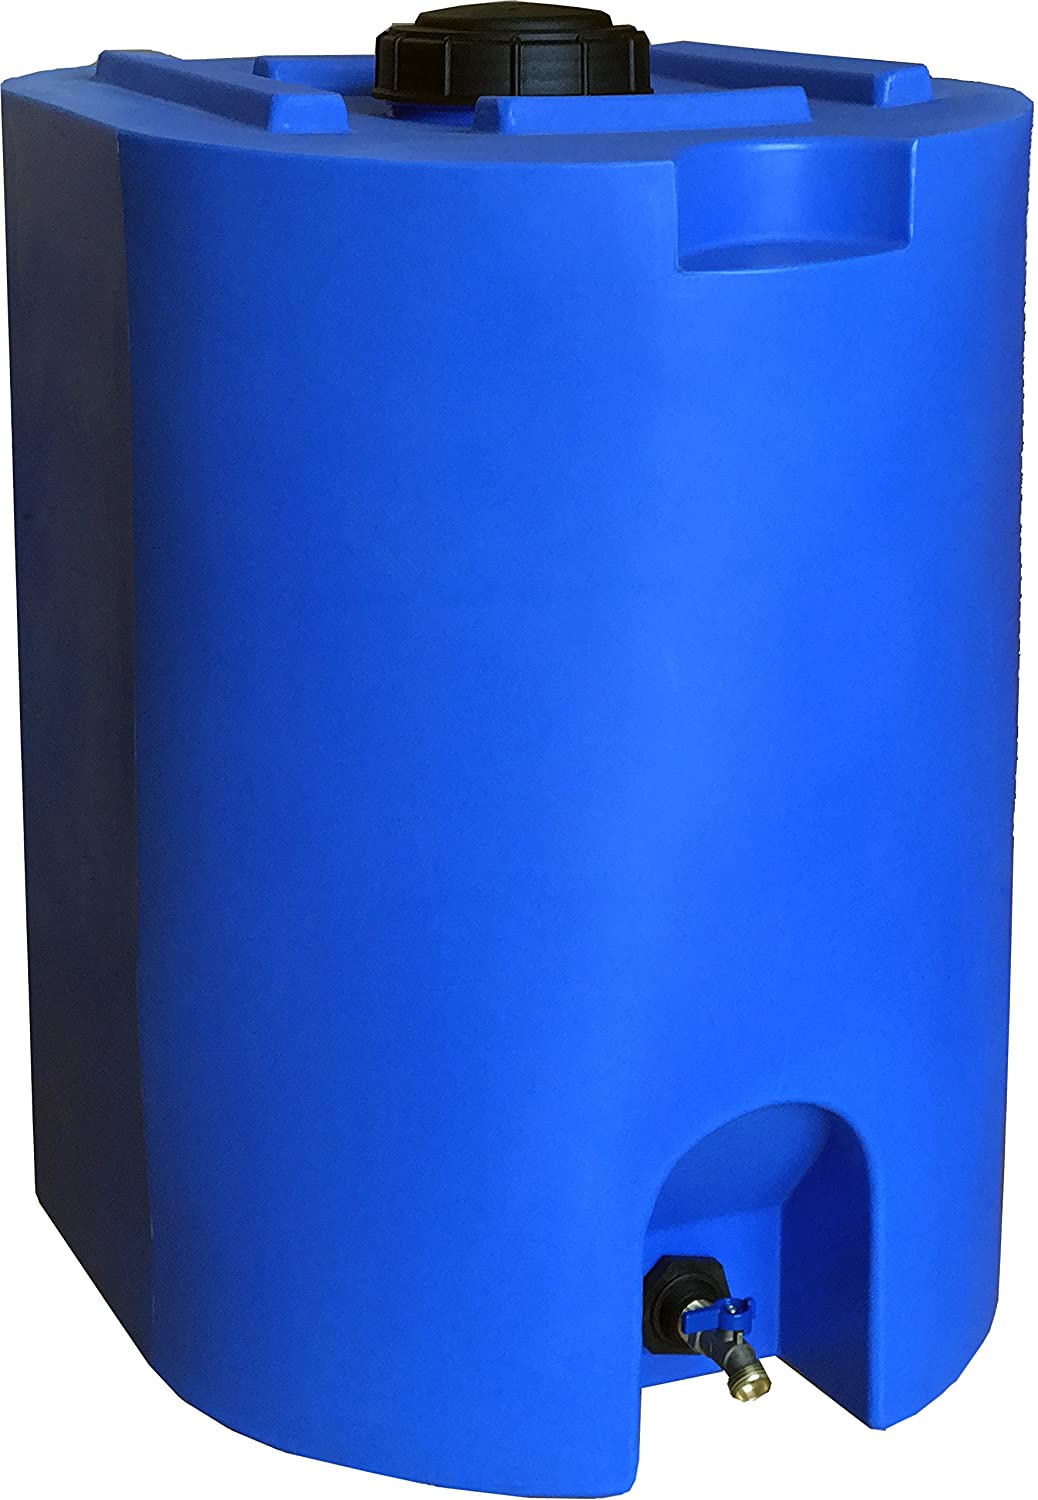 WaterPrepared Blue Water Storage Tank